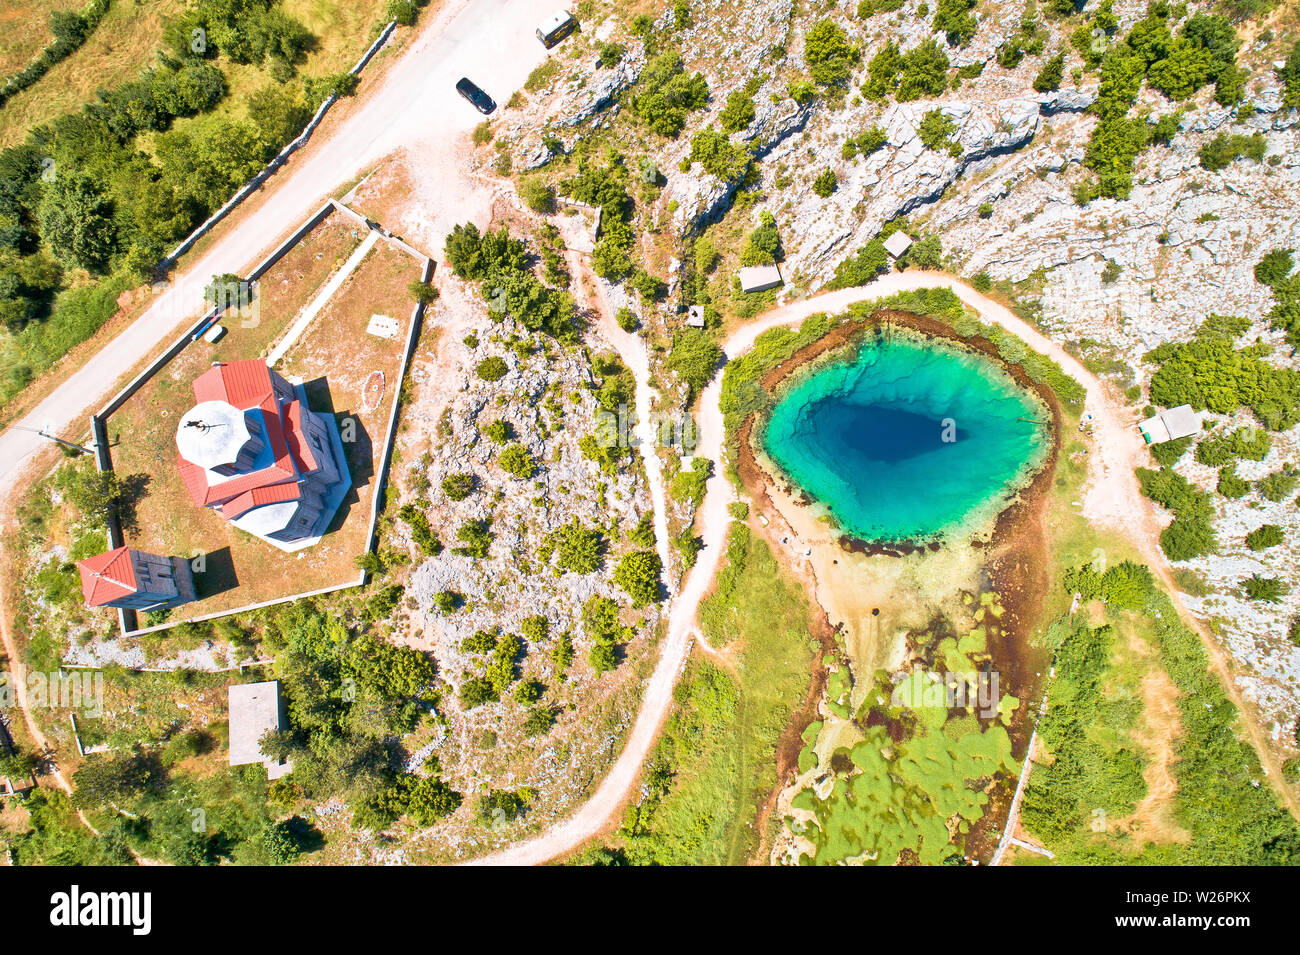 Der Fluss Cetina Quelle Wasser Loch und die Orthodoxe Kirche Luftaufnahme, dalmatinischen Zagora Region von Kroatien Stockfoto